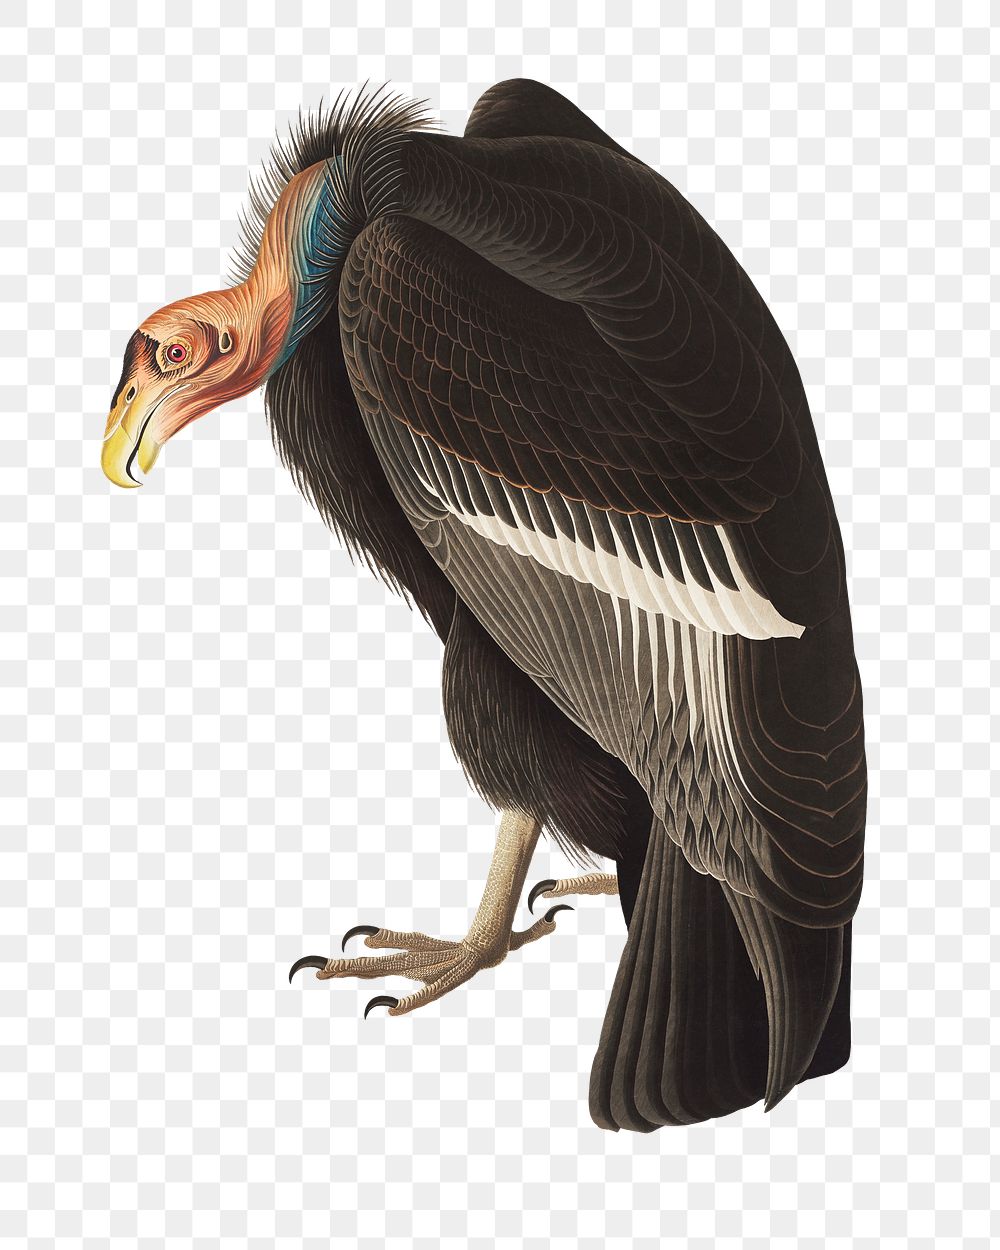 Californian vulture png bird sticker, vintage animal illustration, transparent background